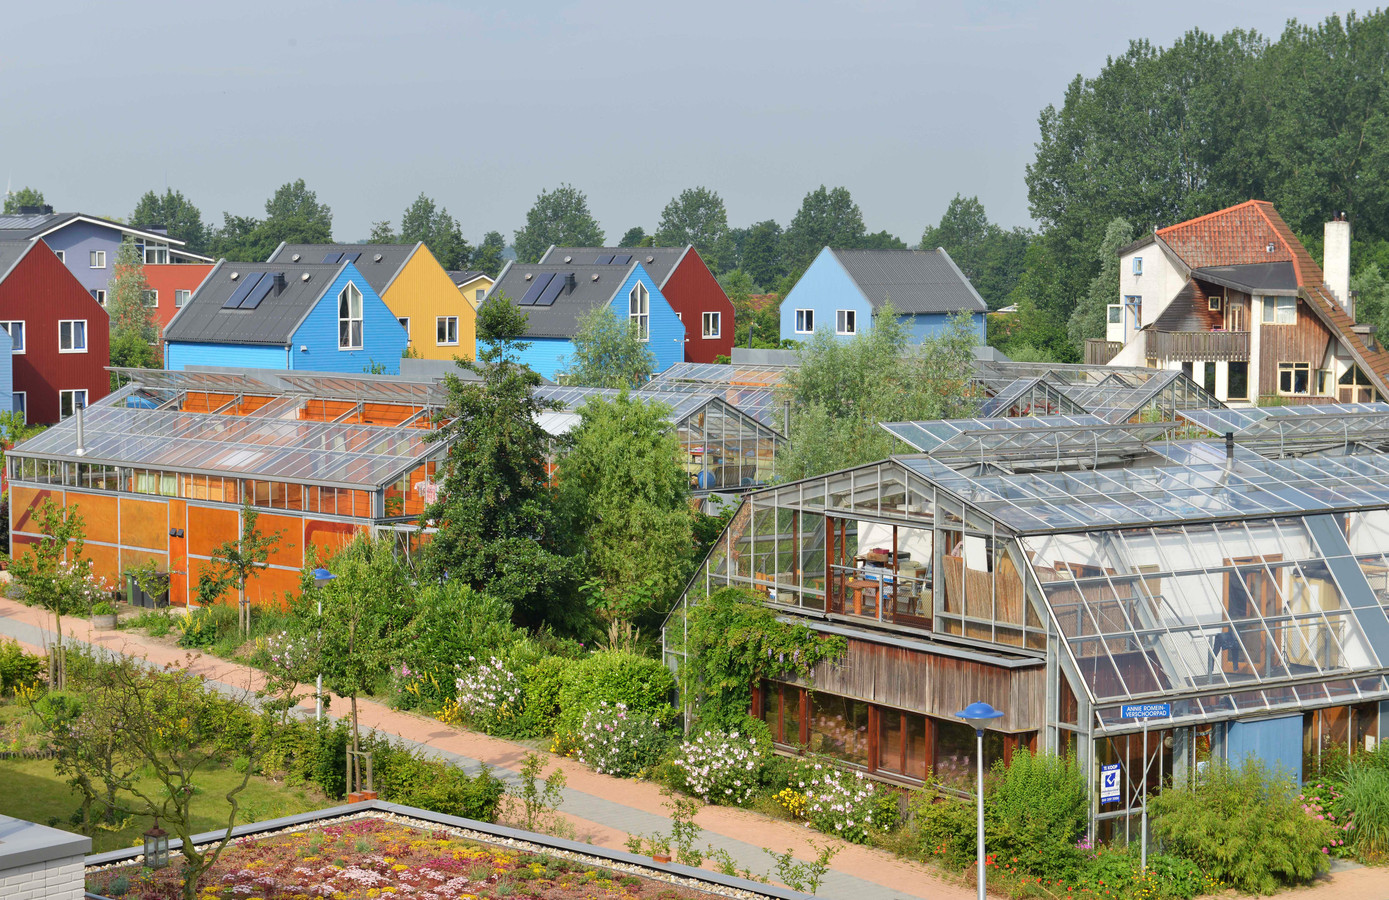 Houtskeletbouw en energiezuinige woningen in Lanxmeer, op de voorgrond experimentele kaswoningen.